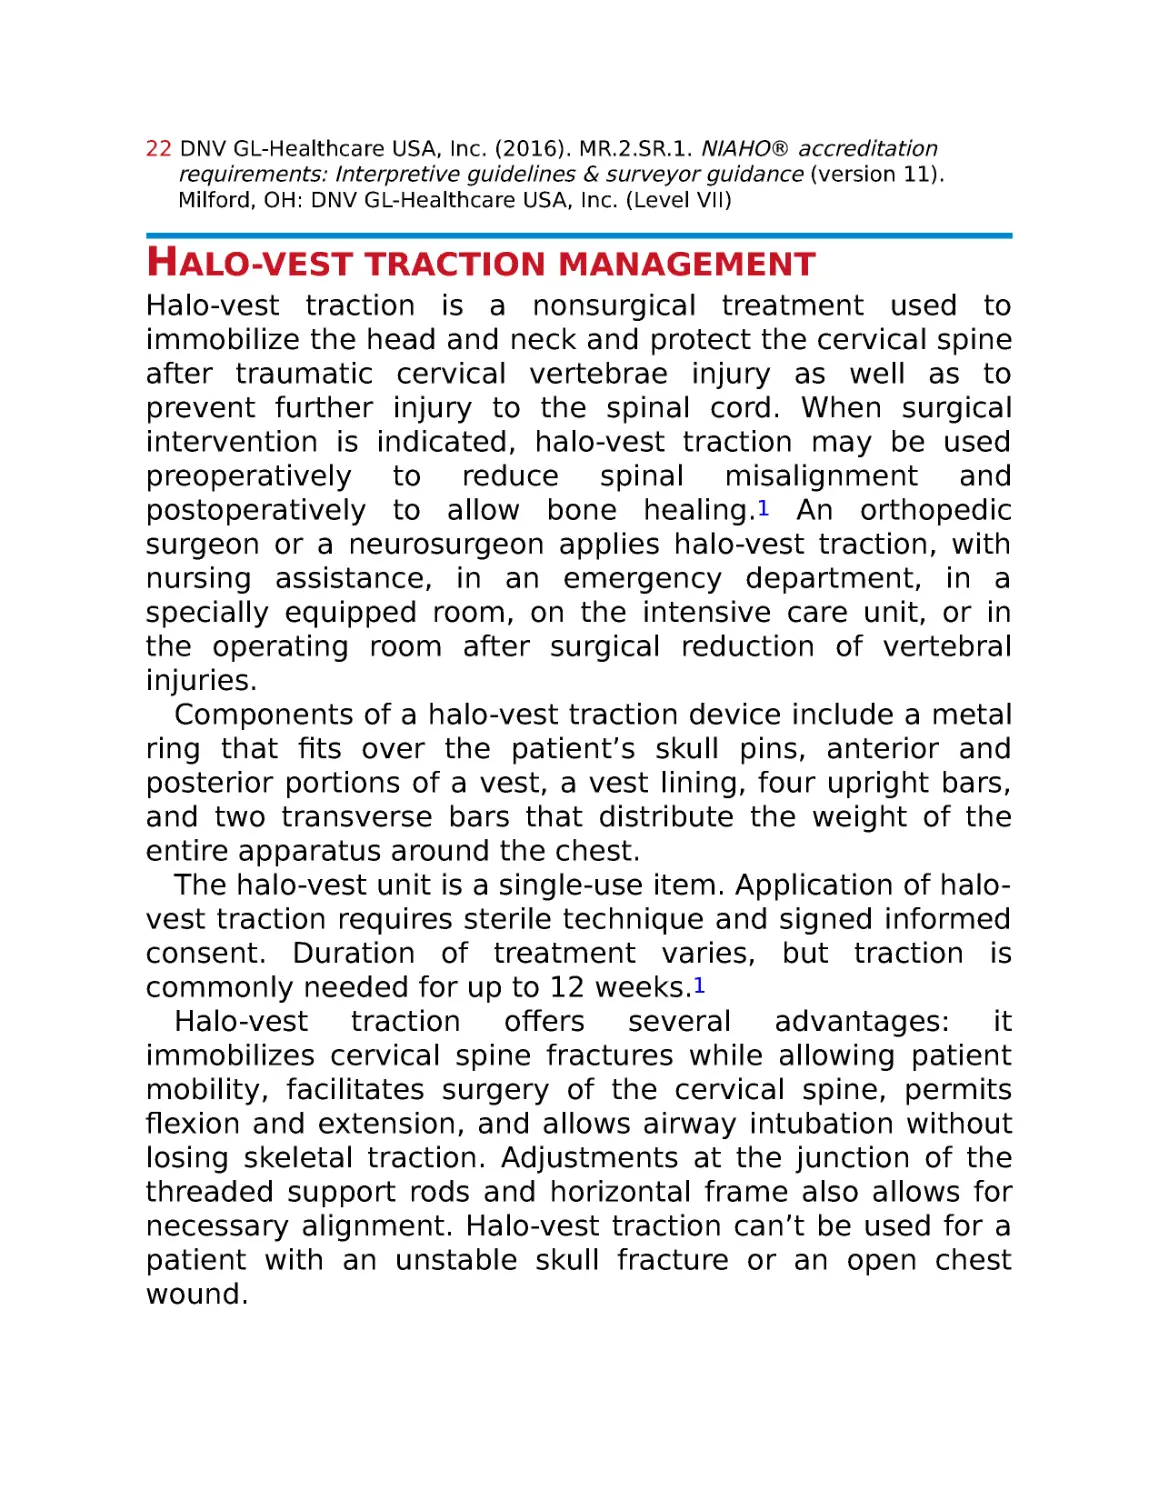 Halo-vest traction management